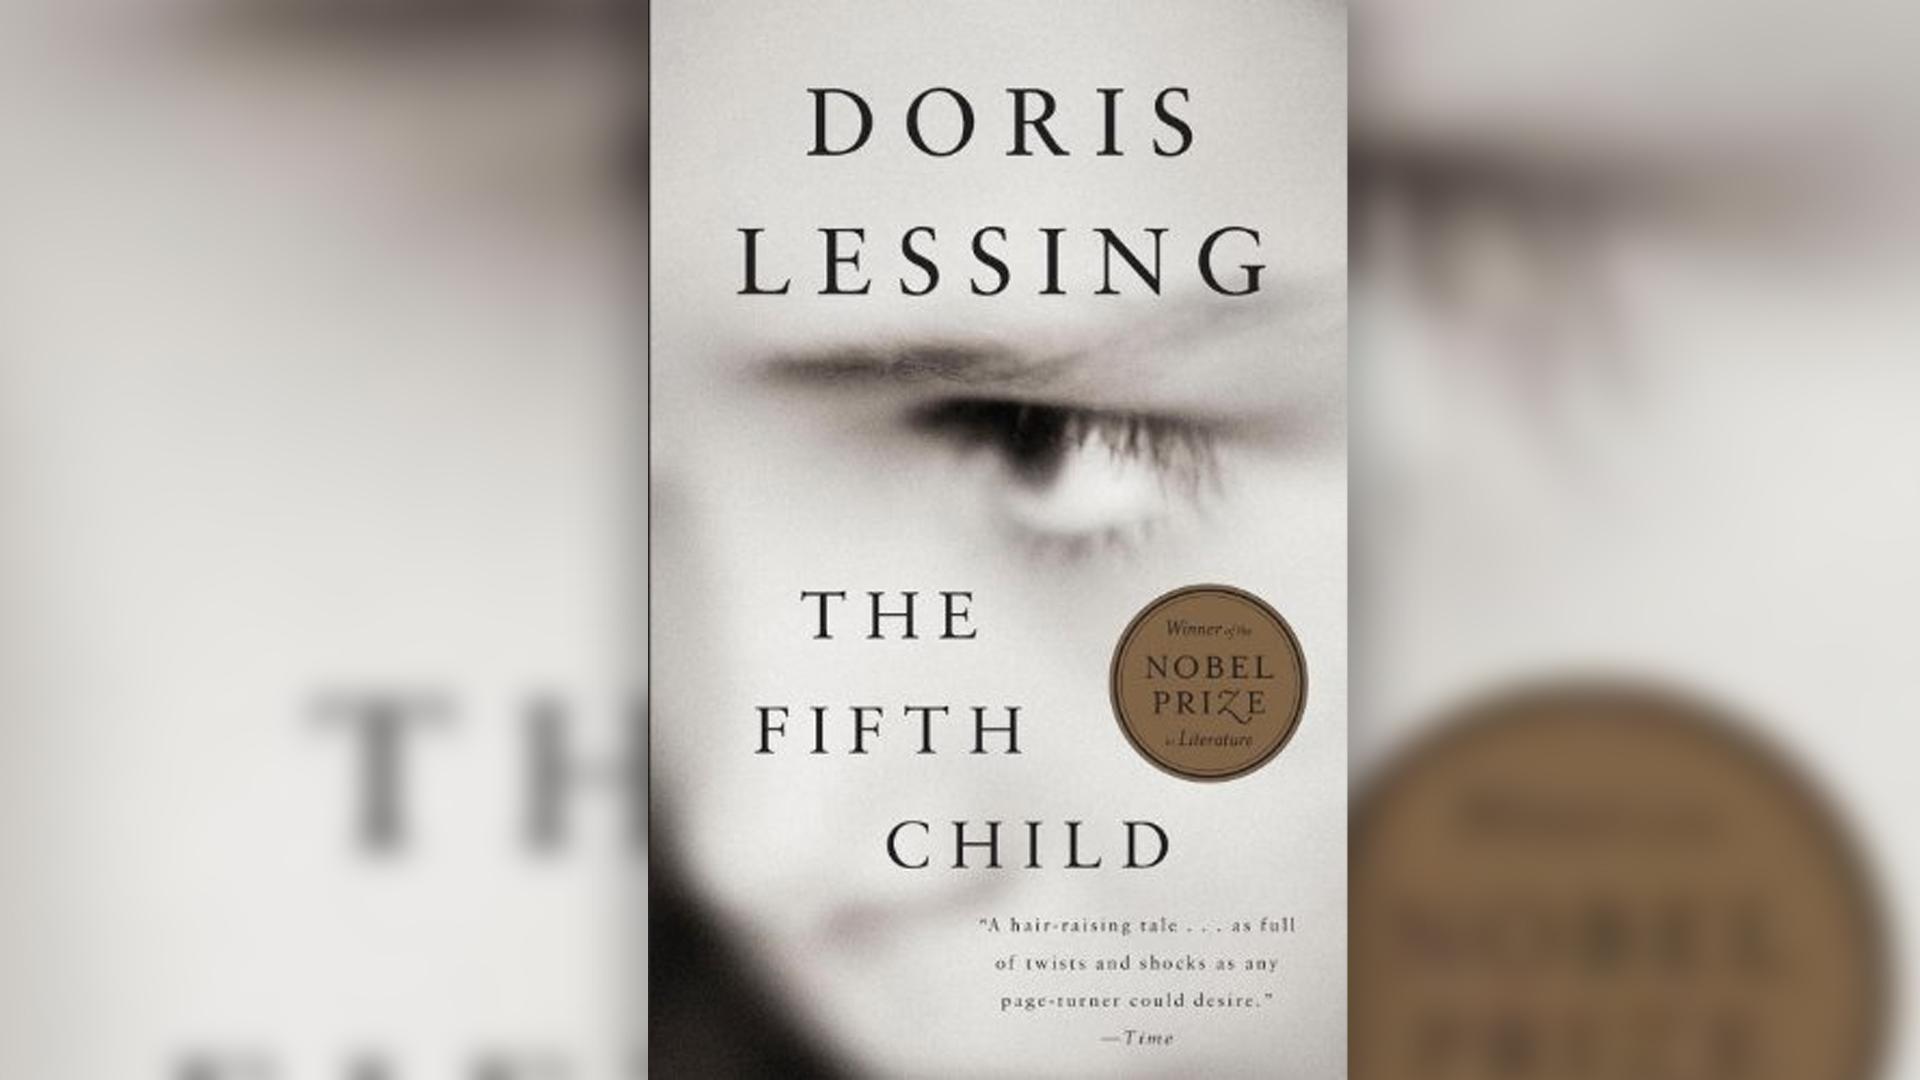 Club anglès: The Fifth Child, de Doris Lessing - Activitat virtual